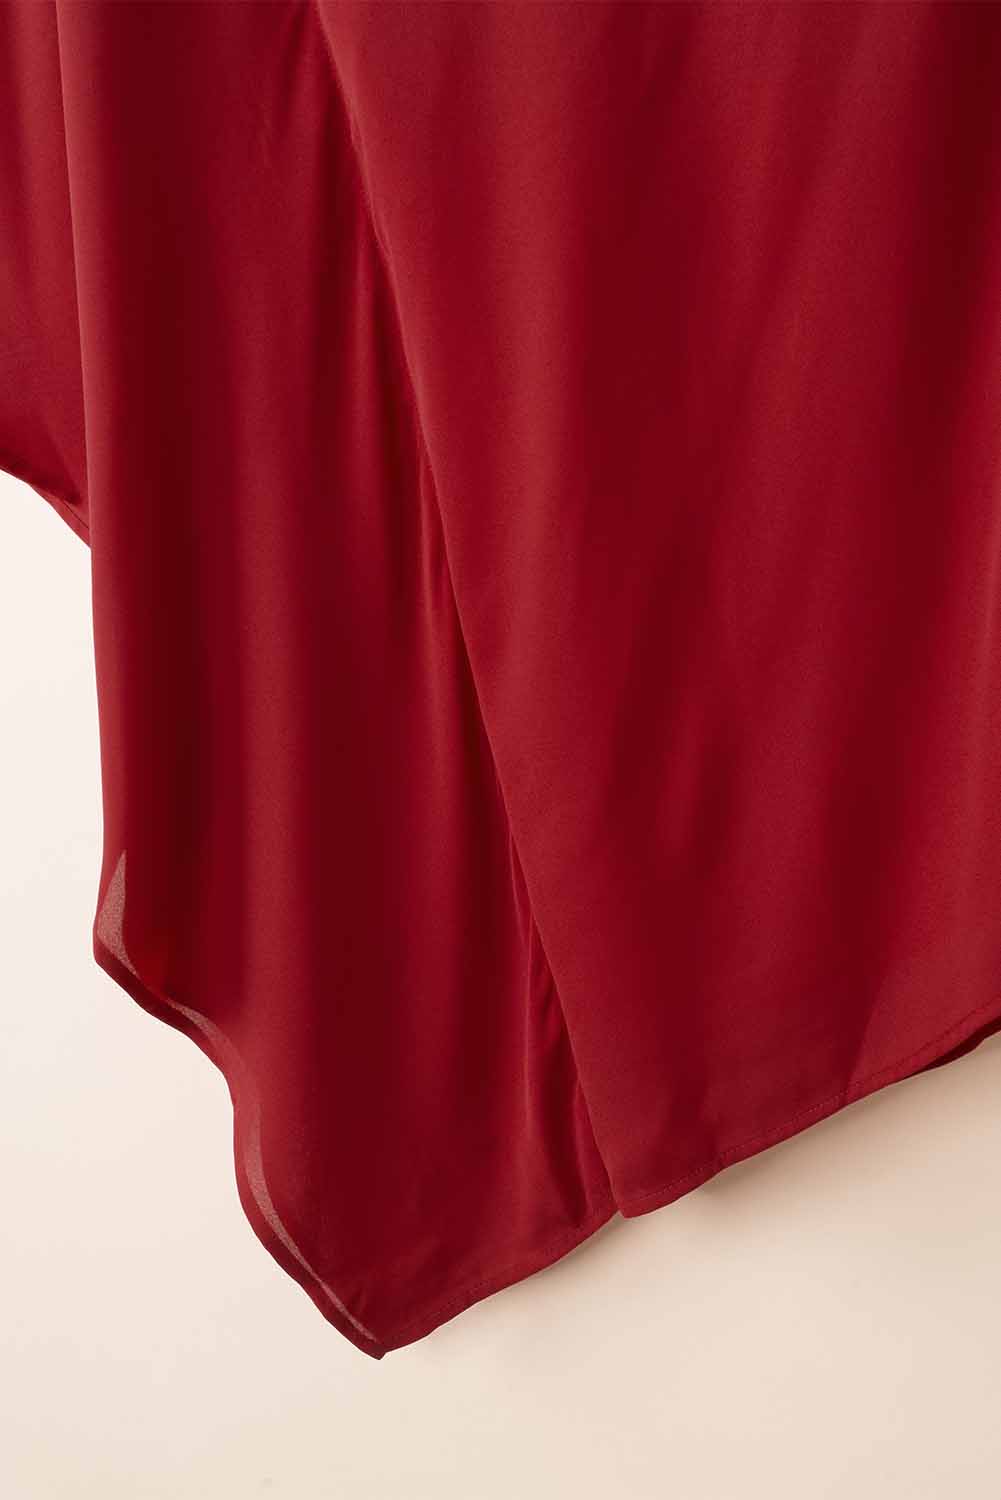 Rotes, einfarbiges Minikleid mit einer Schulter und Fledermausärmeln